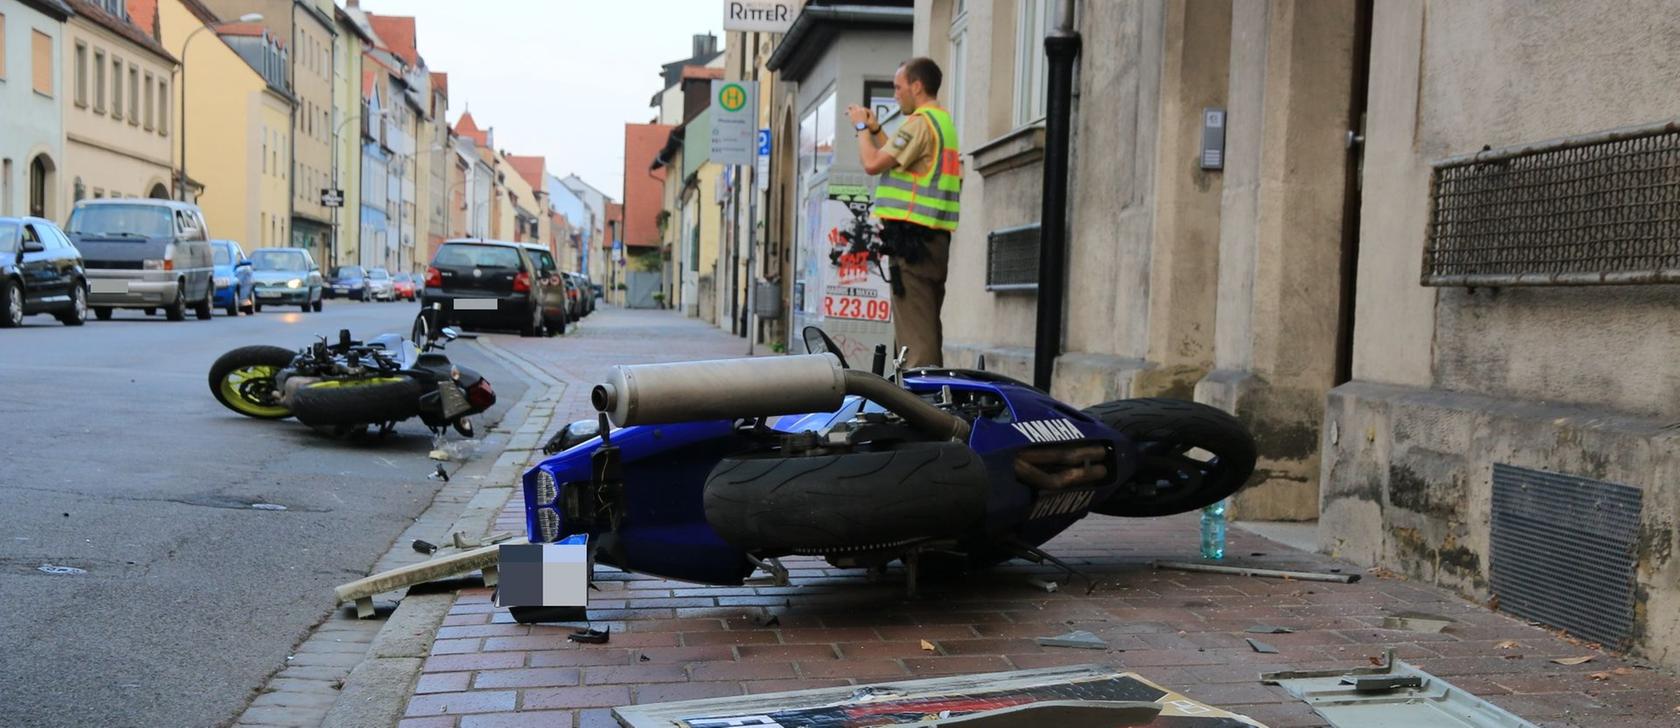 Den Abbiegevorgang schaffte ein Fahrschüler mit seinem Motorrad nicht und krachte gegen eine Fassade.